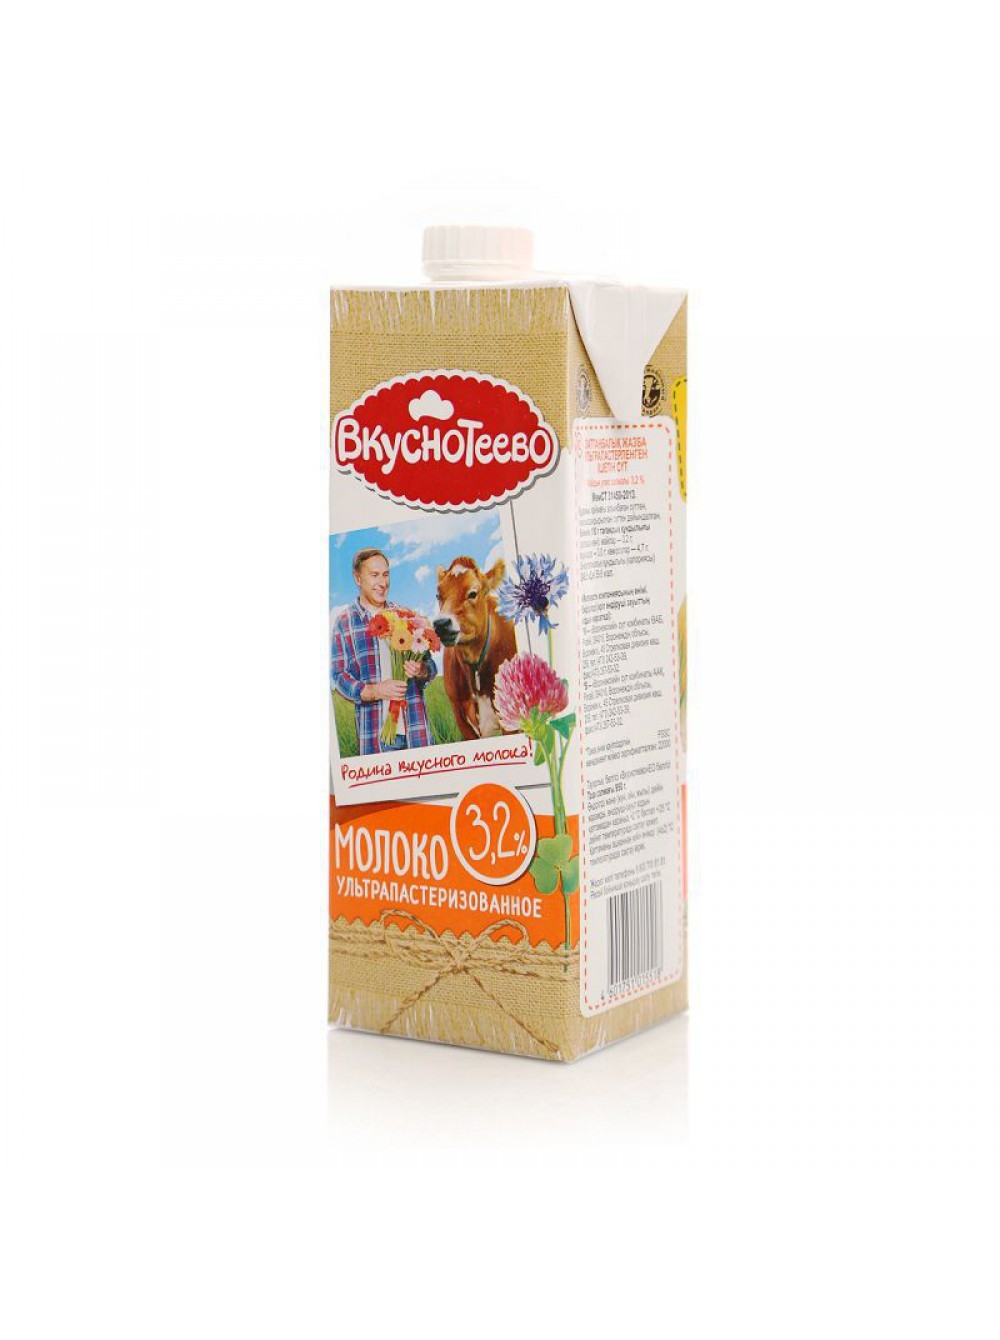 Молоко Вкуснотеево 3.2 производитель